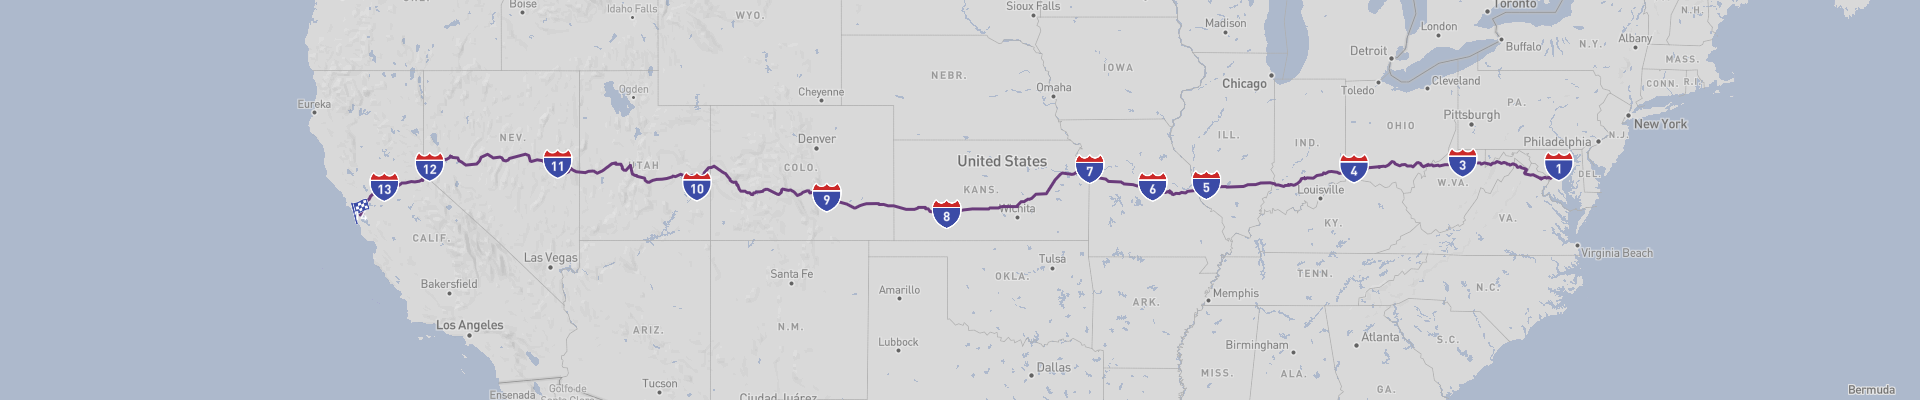 美国的脊梁--US-50公路之旅